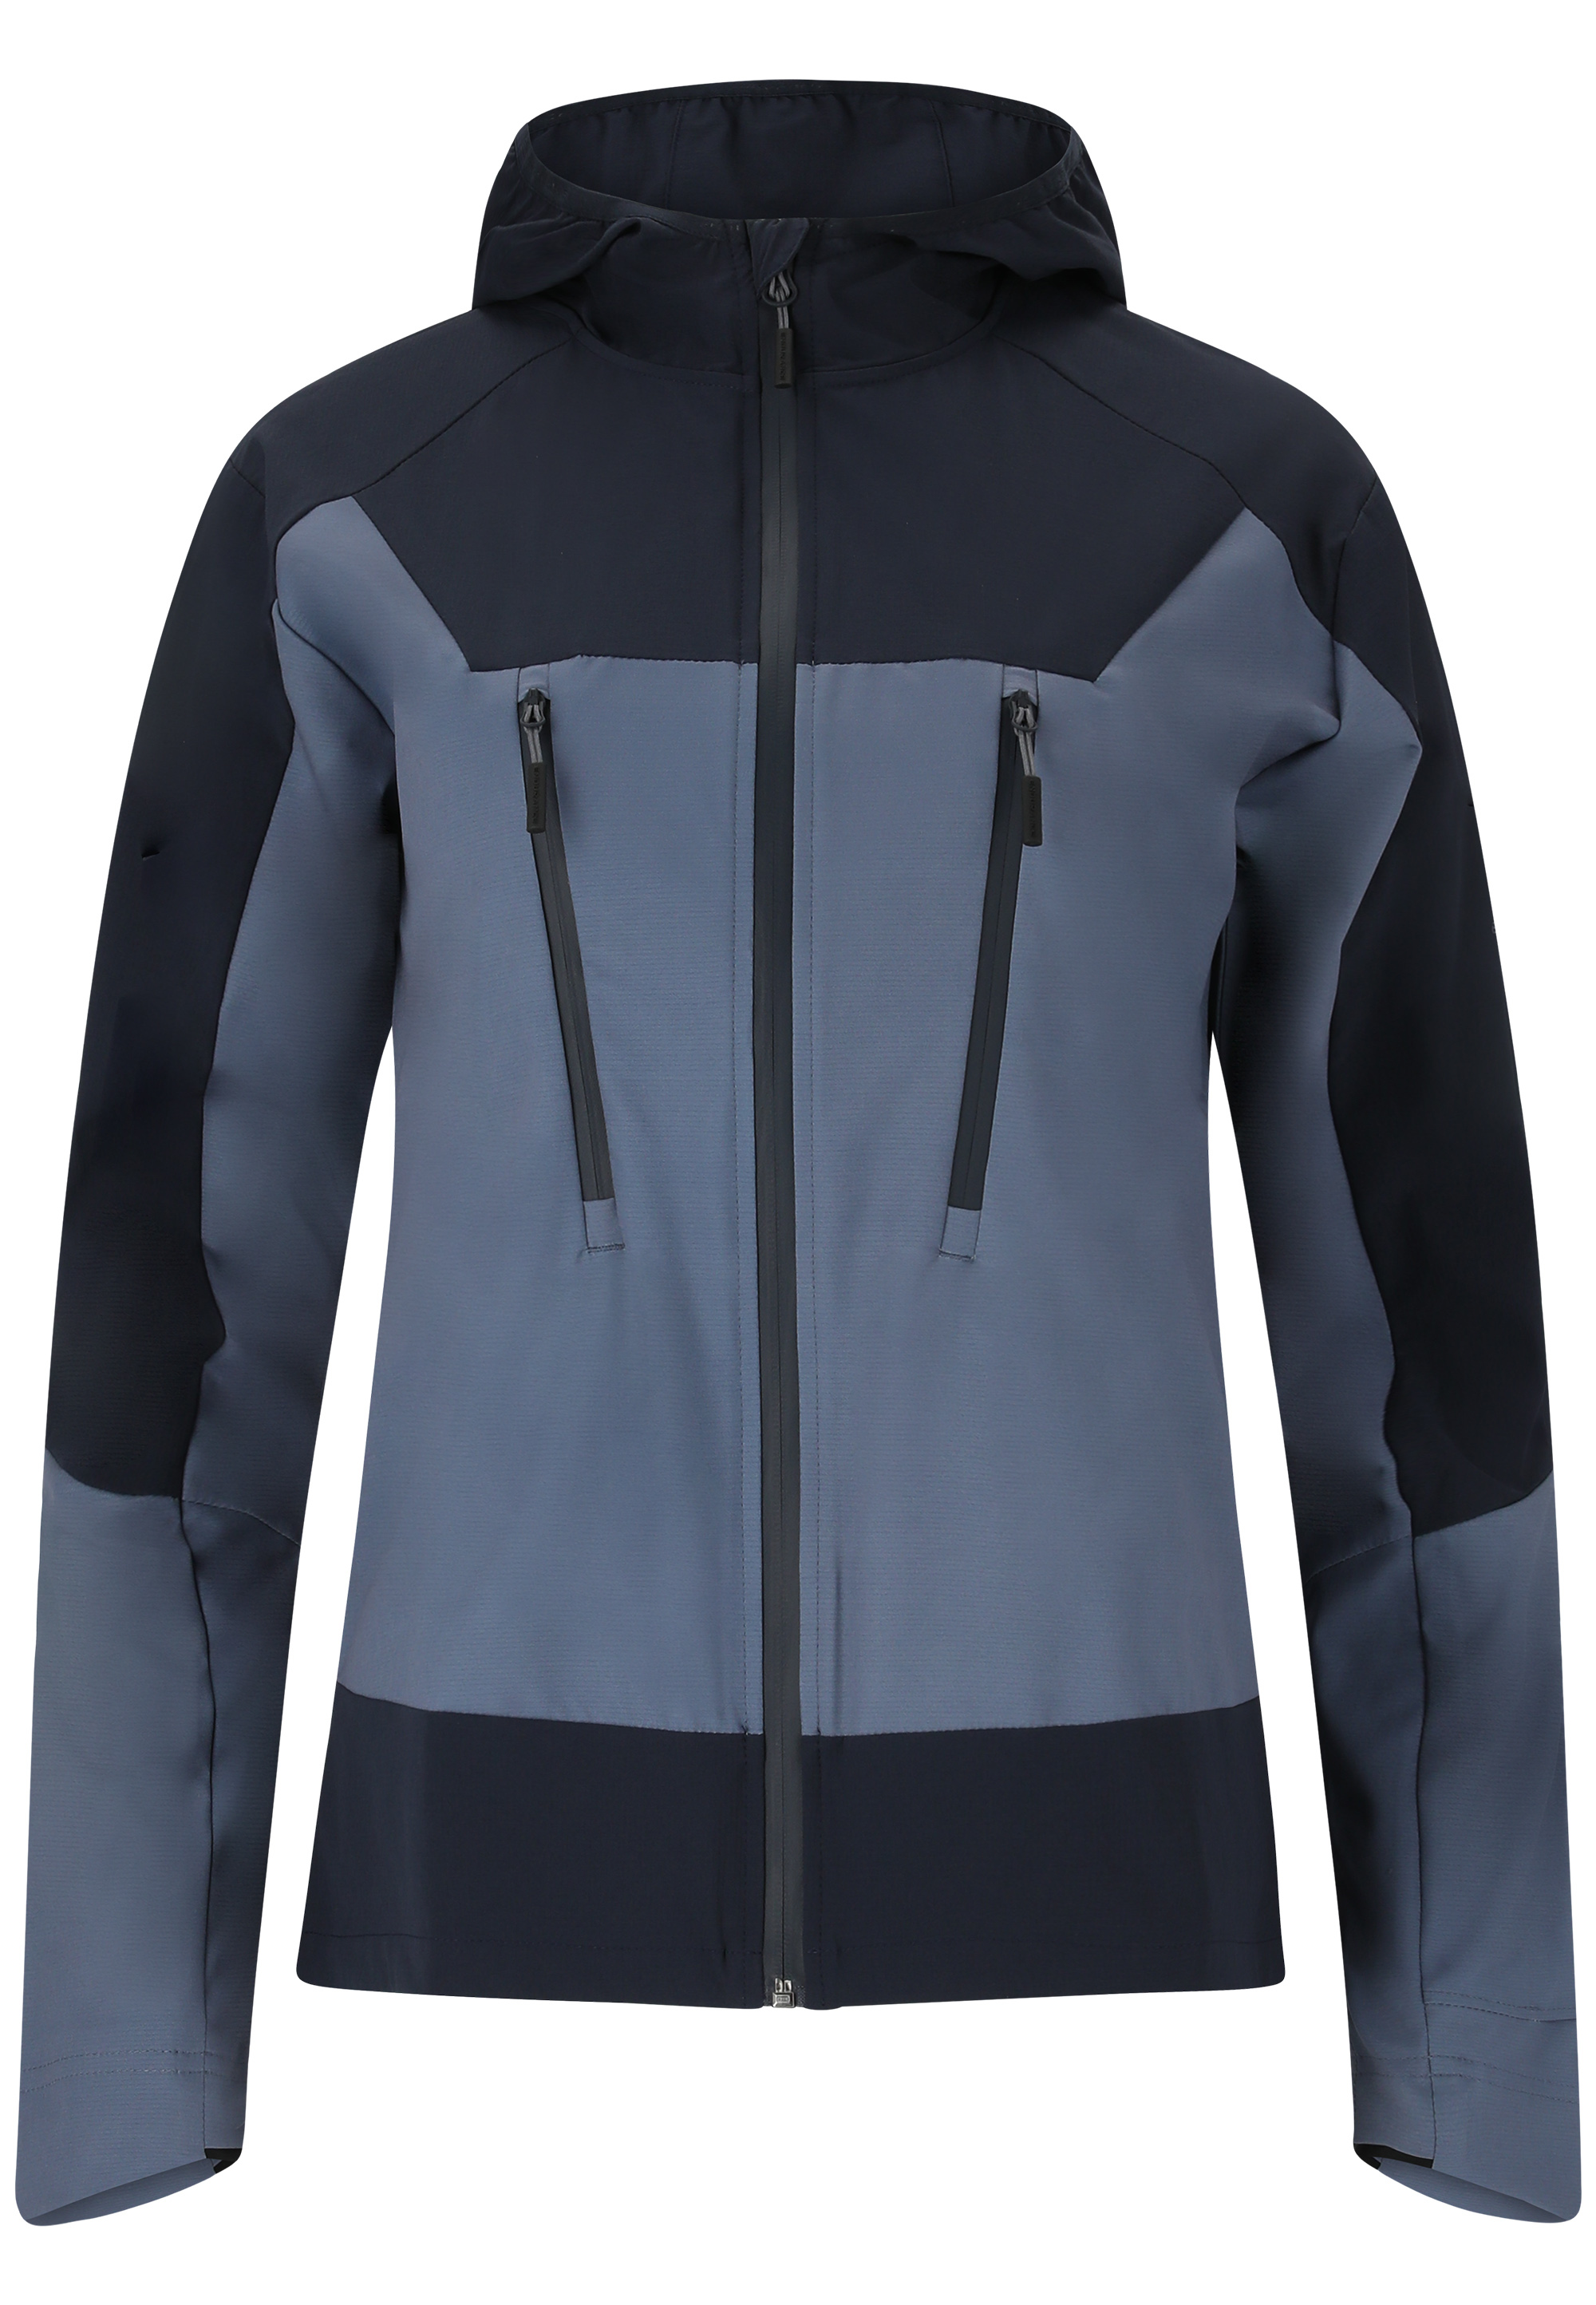 Спортивная куртка Endurance Telly , цвет 2101 Dark Sapphire спортивная куртка endurance telly цвет 1002 white